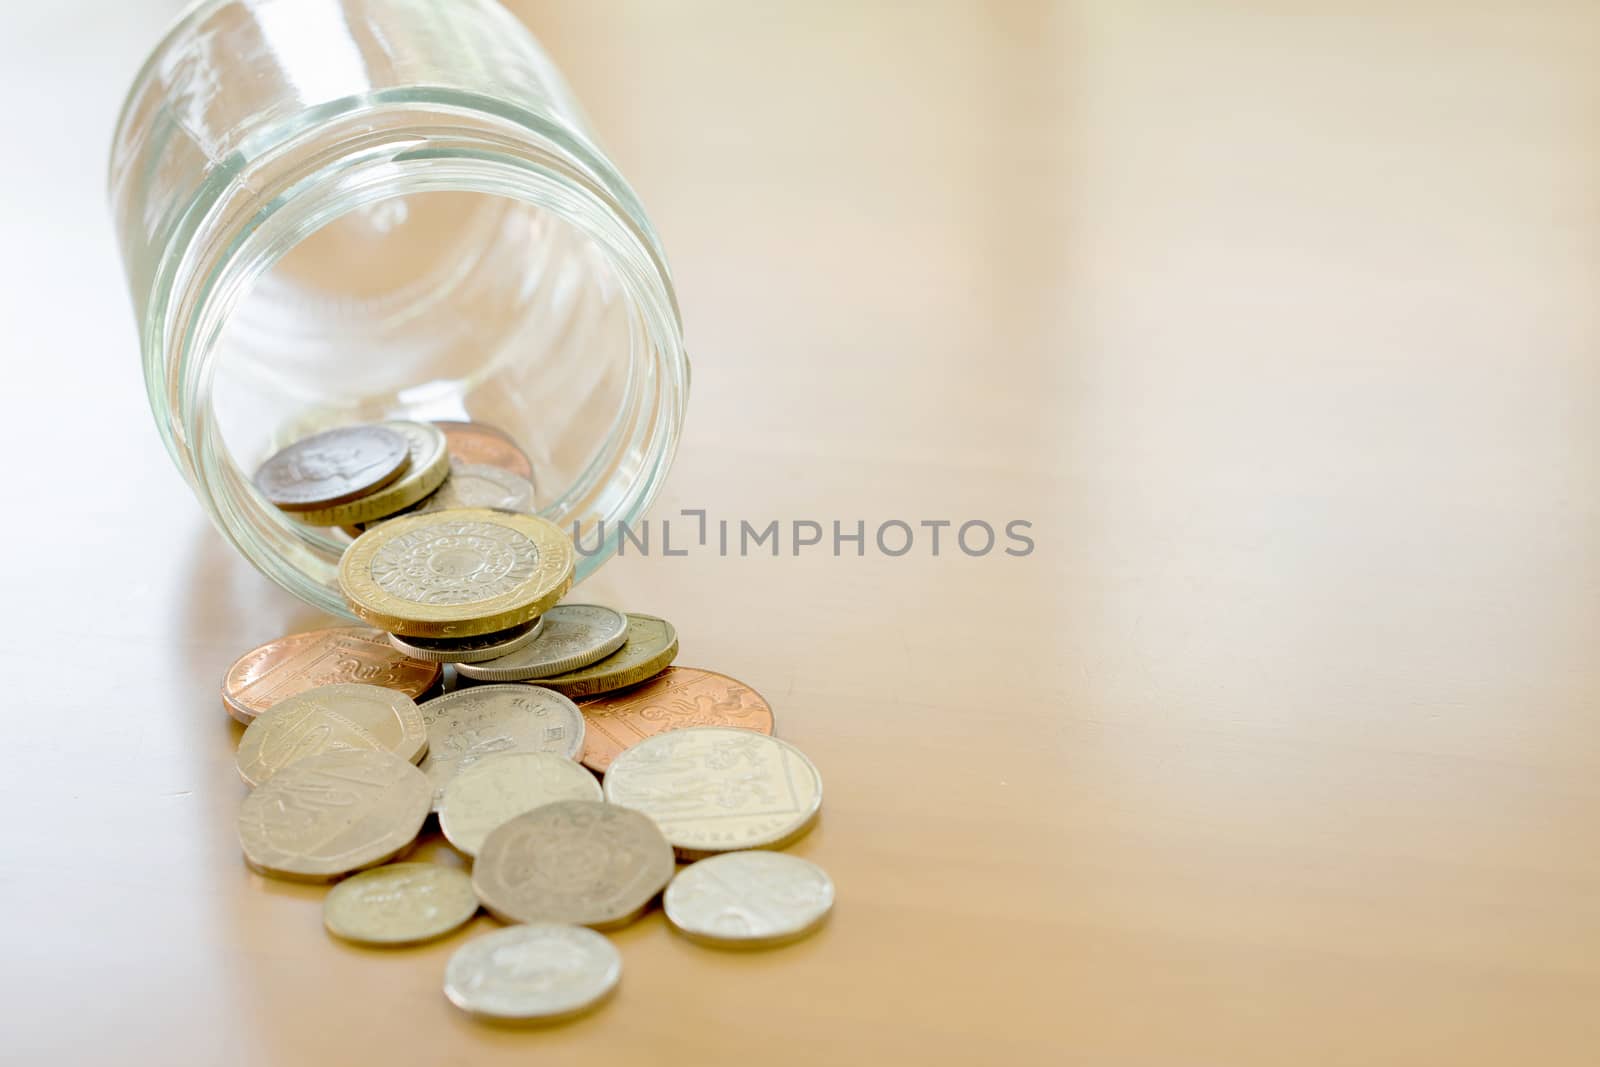 Savings Jar and British Coins